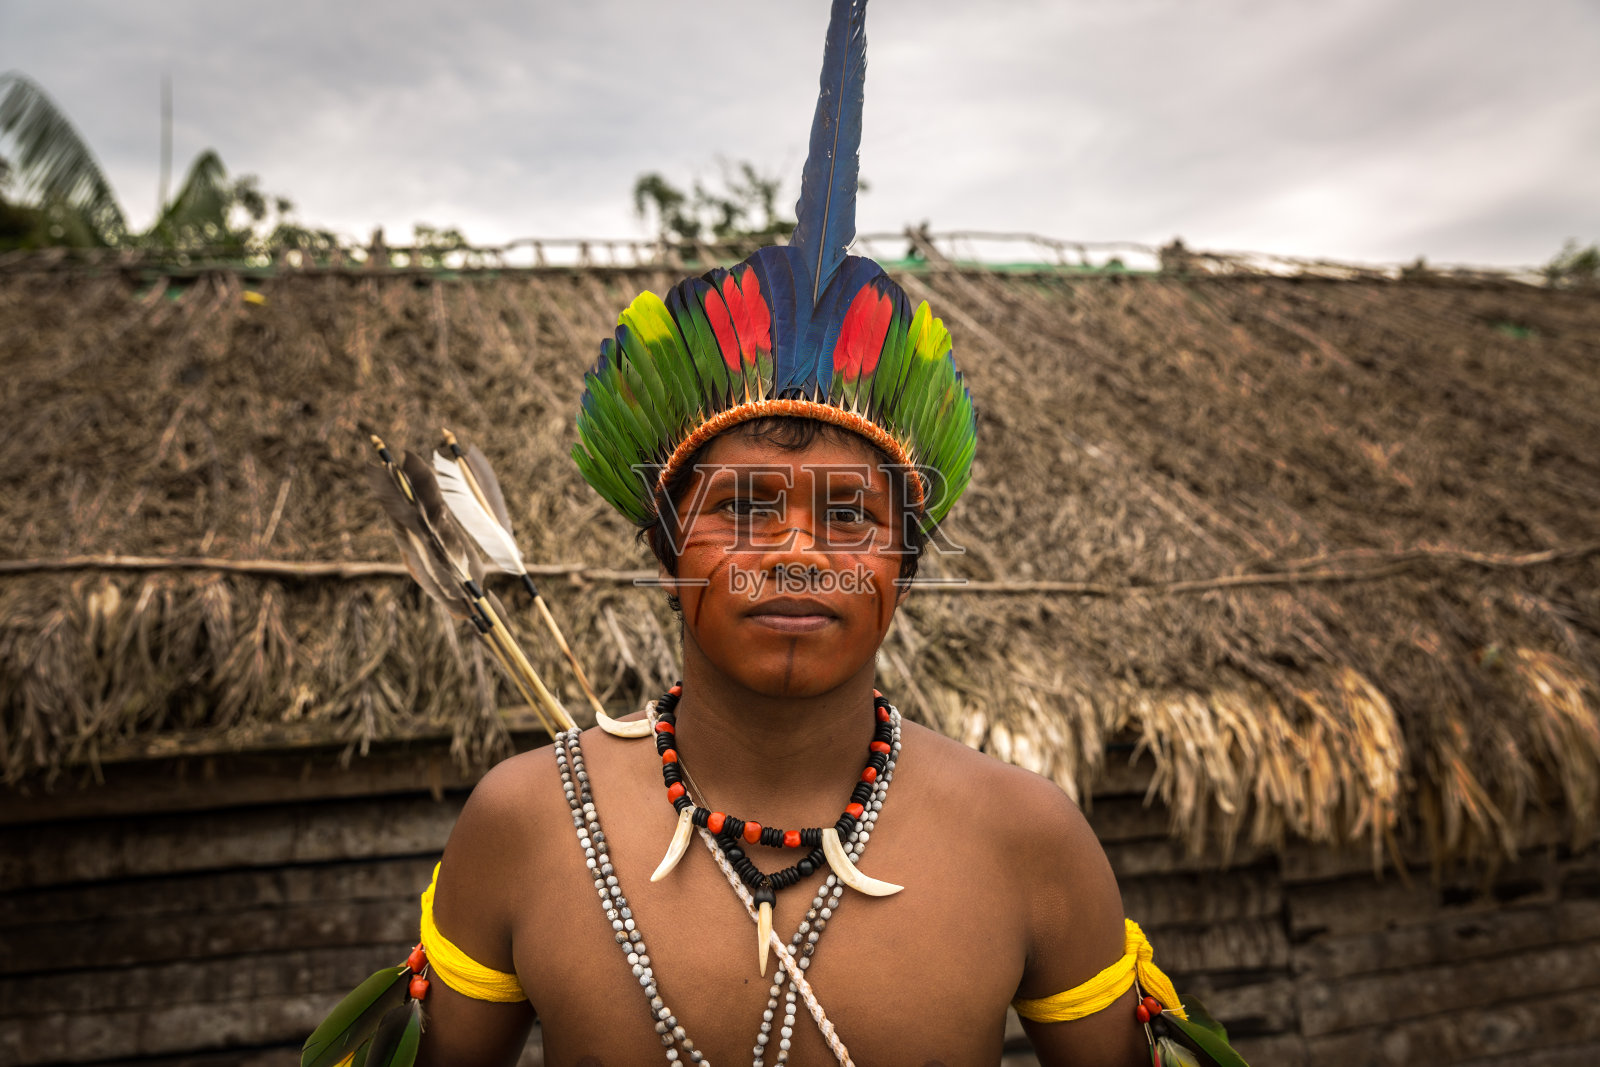 来自巴西图皮瓜拉尼部落的巴西土著男子(印第奥)照片摄影图片